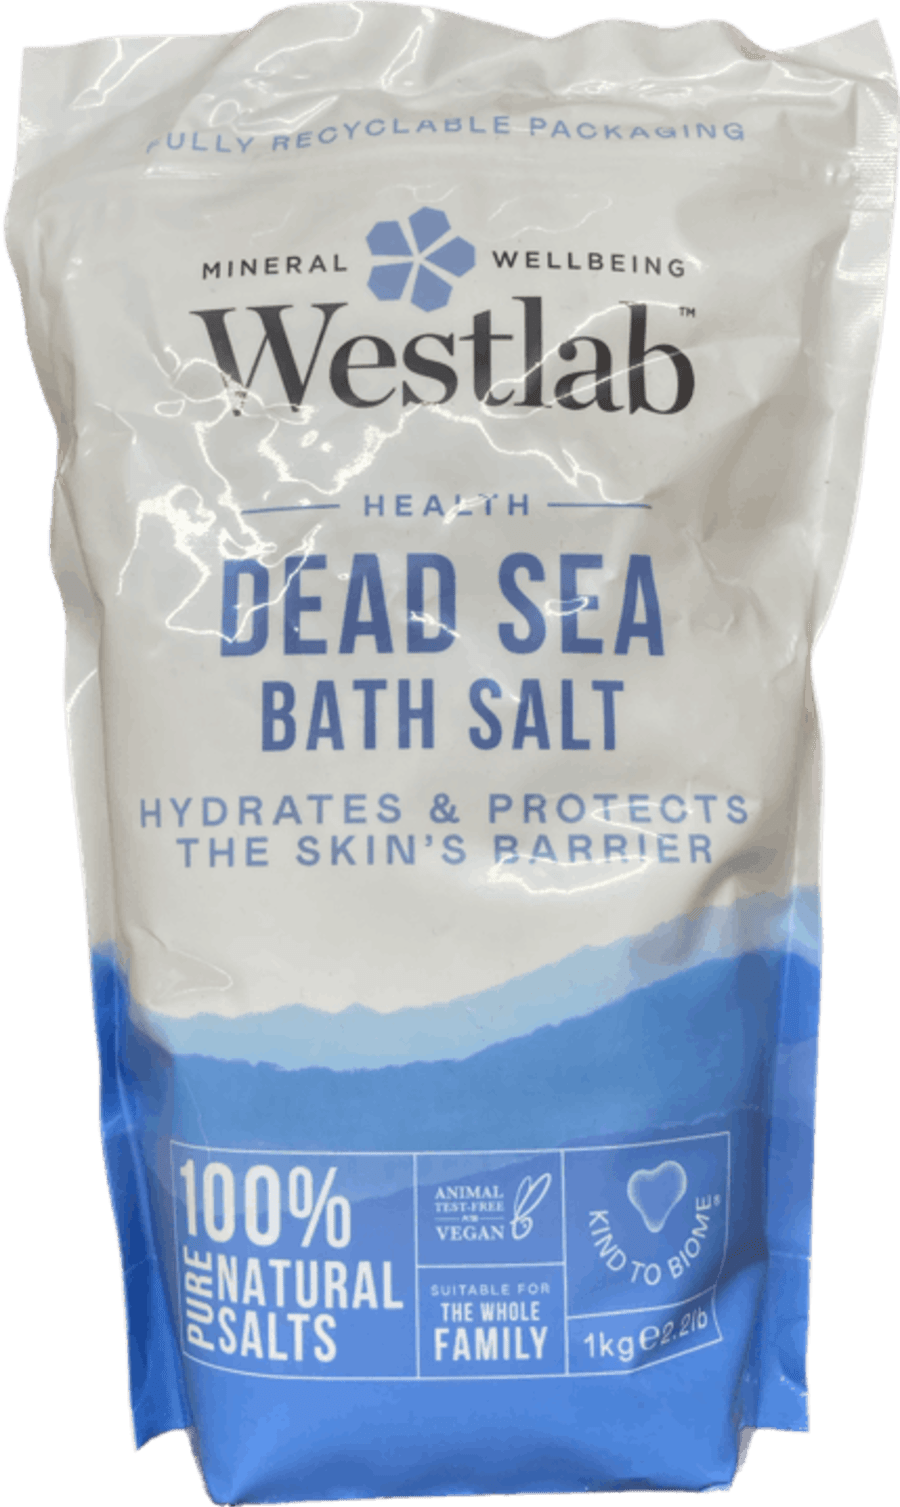 Westlab baðsalt dead sea 1 kg